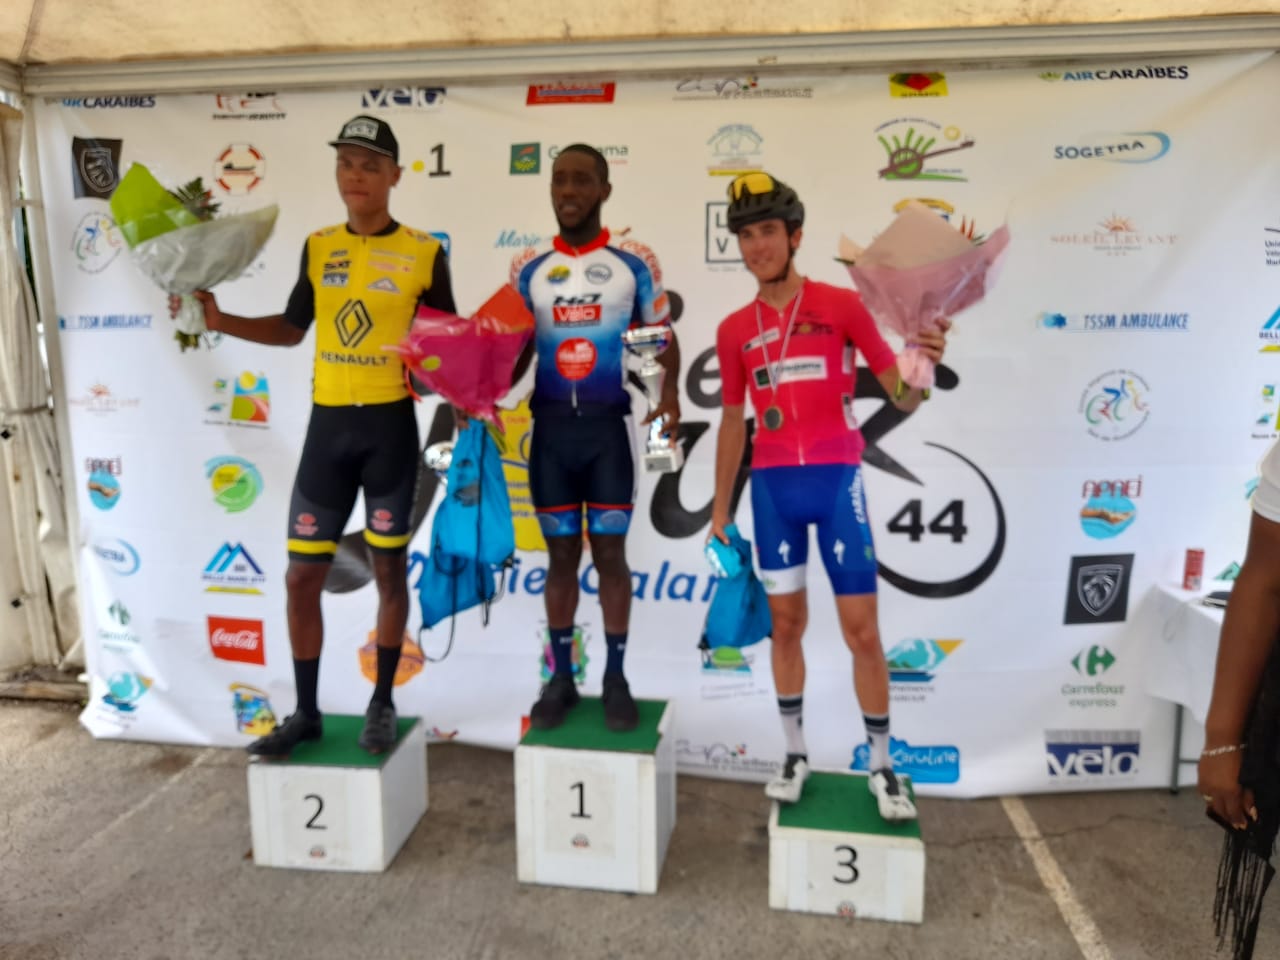     Tour de Marie-Galante : victoire de Brandon Baret-Ajax à la deuxième étape

